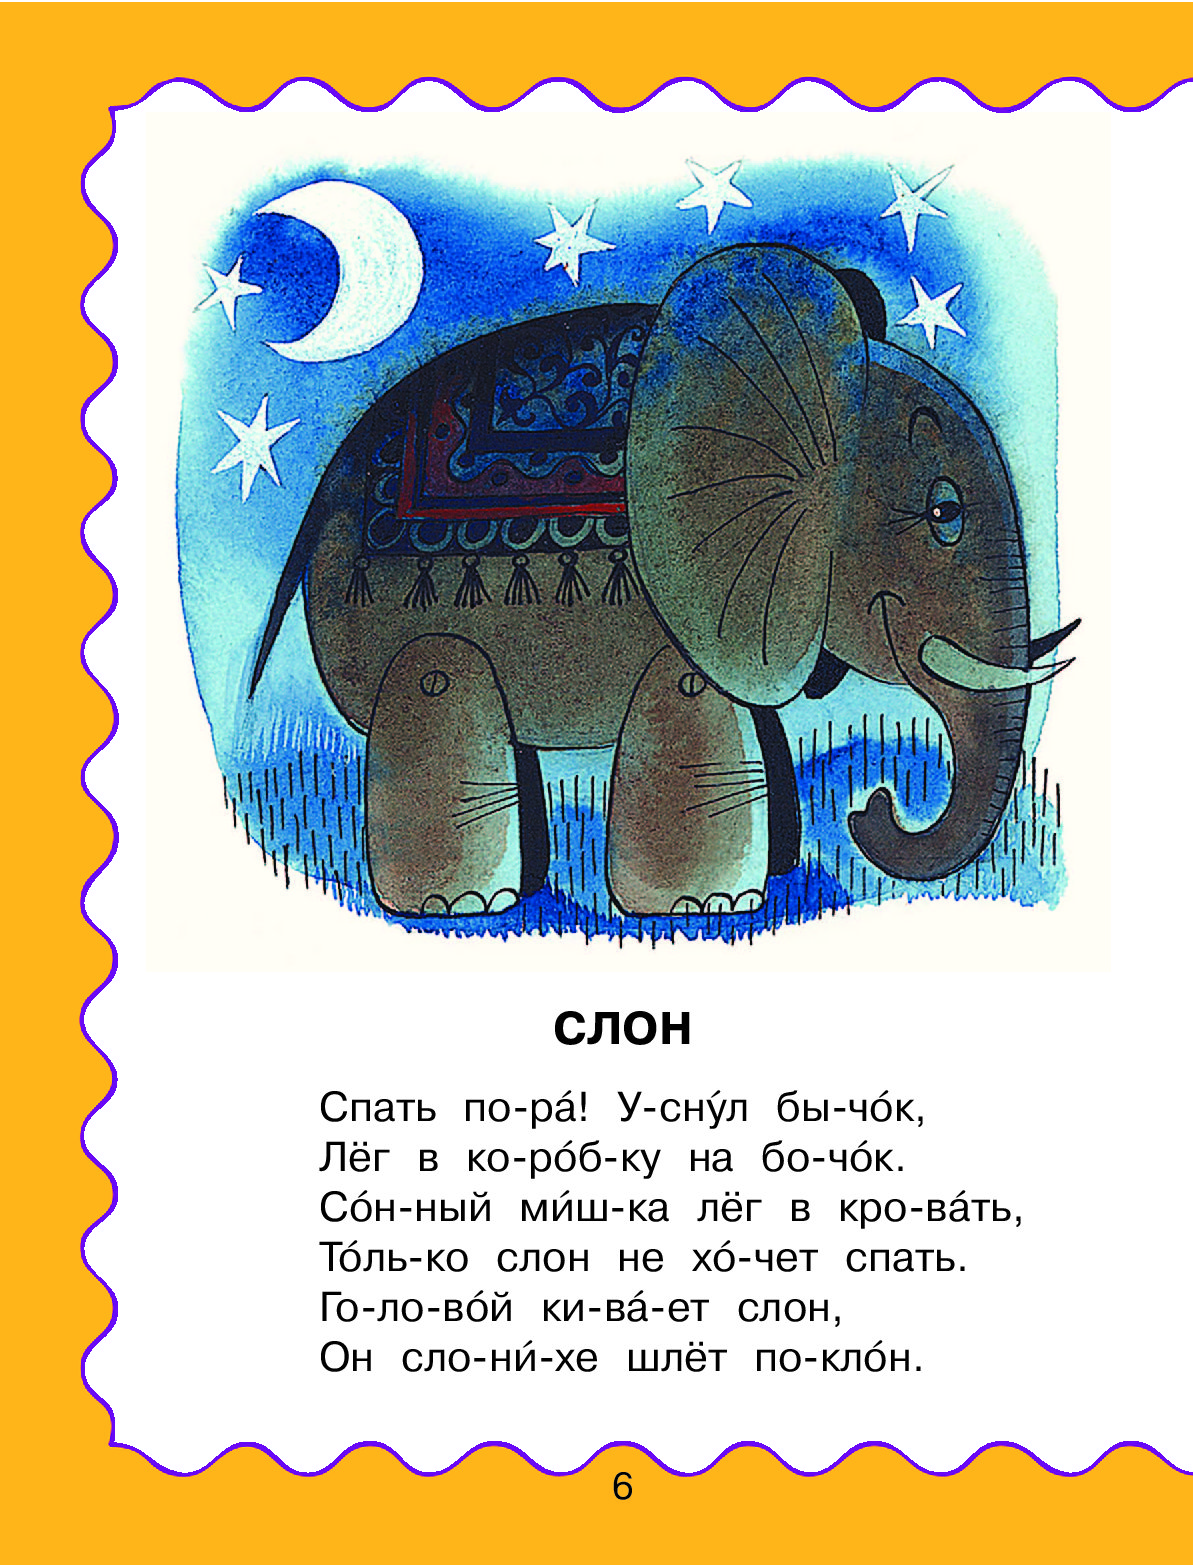 Слоник на слоги. Стих про слона для детей. Детские стихотворения про слона. Стишки про слона для детей. Детское стихотворение про слона.